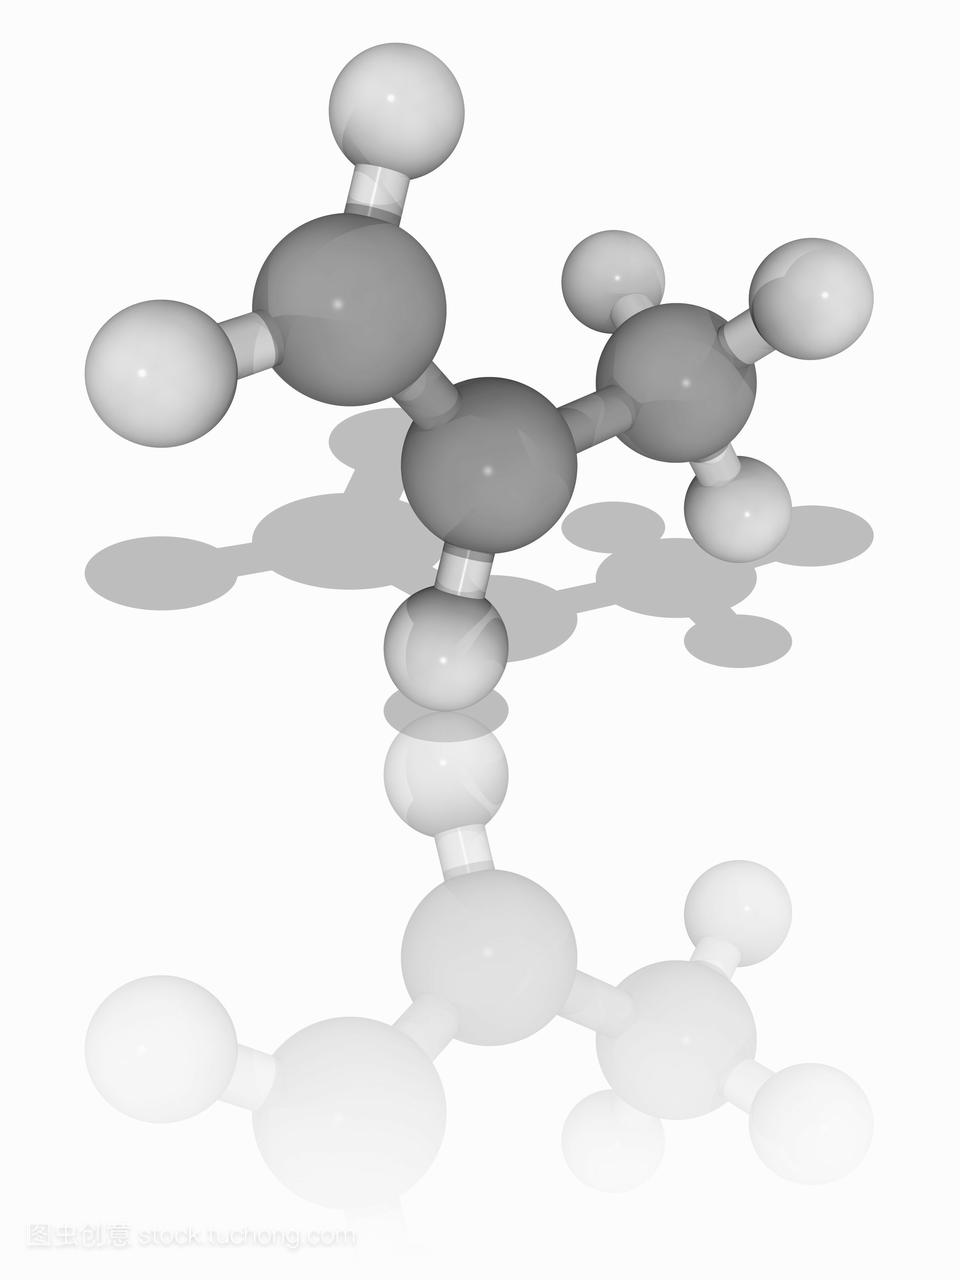 烃丙烯c3h6的分子模型,也叫丙烯或甲基乙炔。